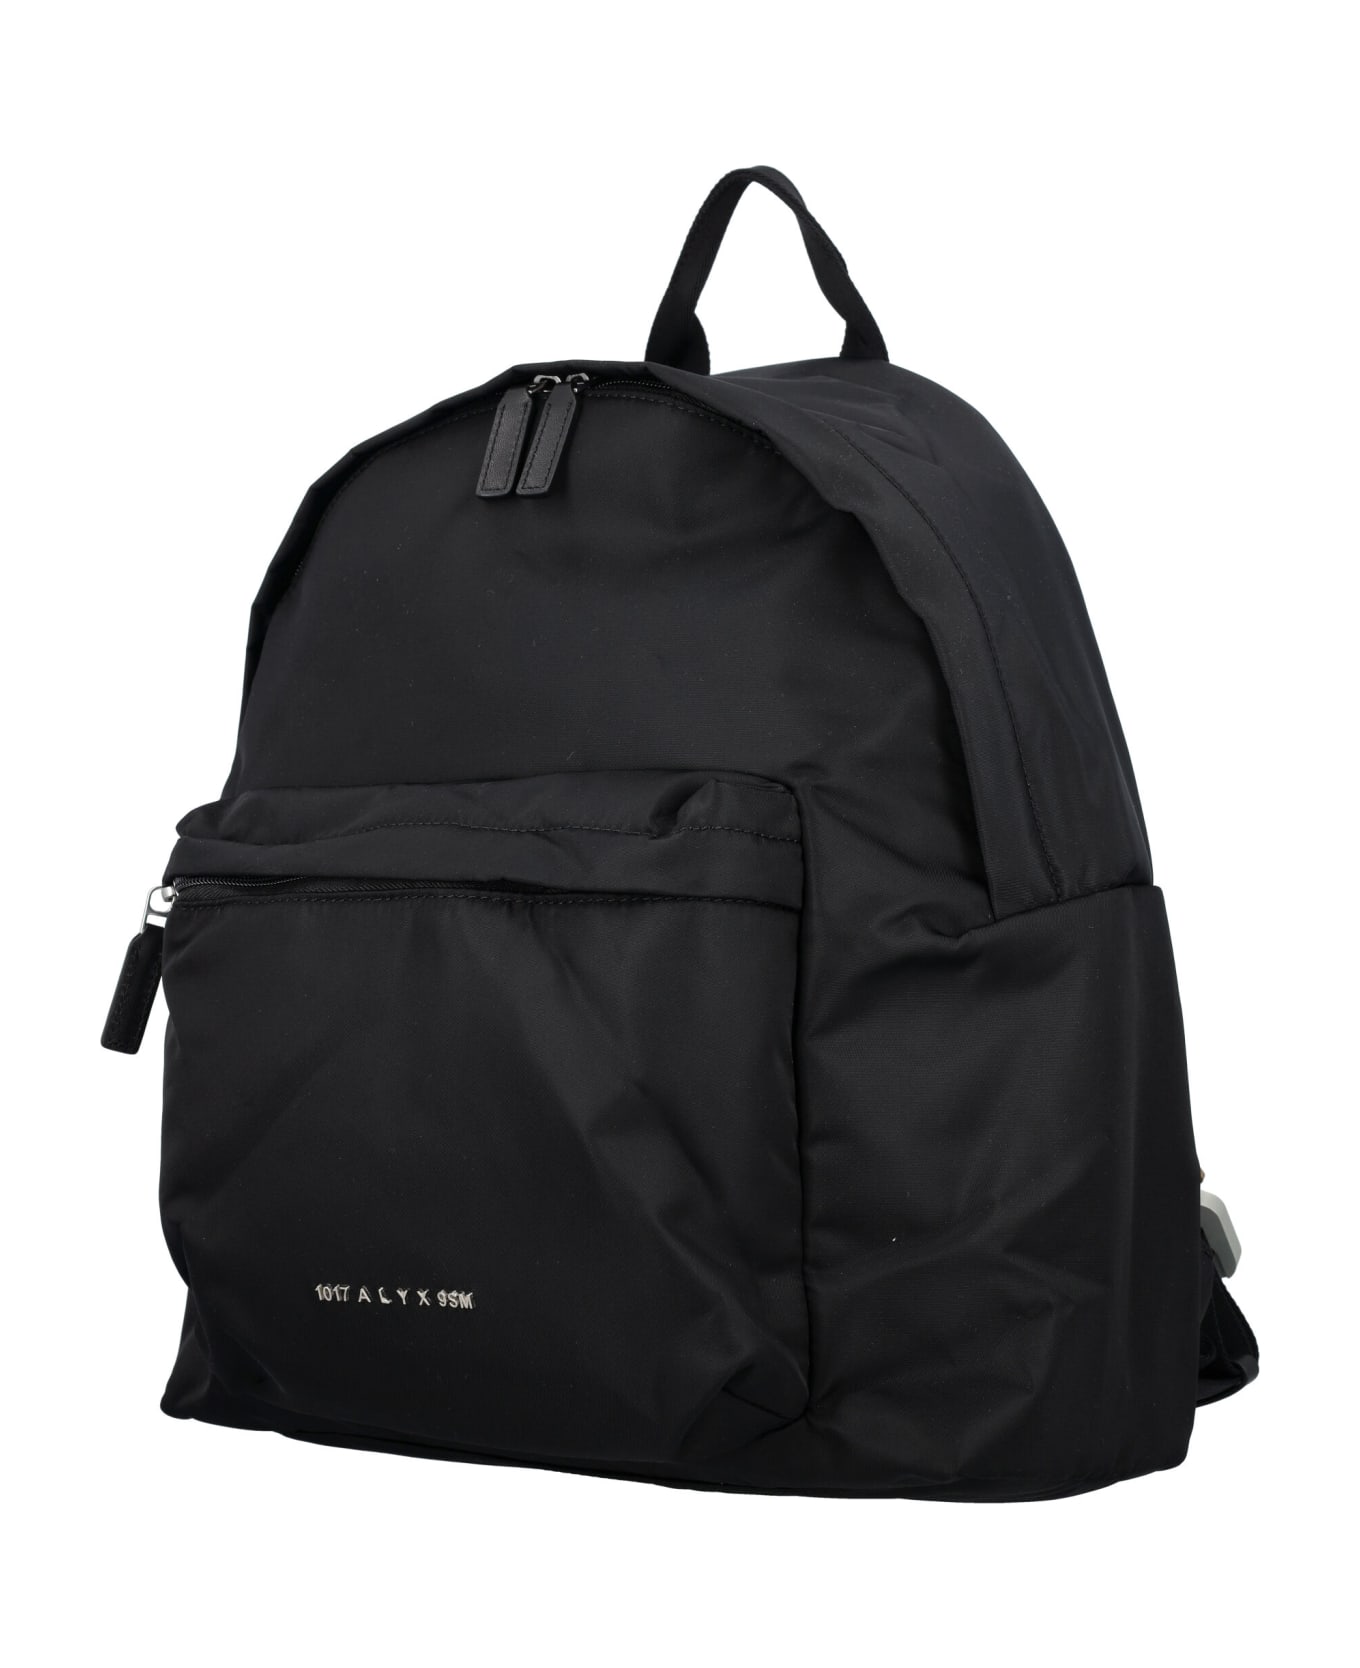 1017 ALYX 9SM Buckle Shoulder Straps Backpack - BLACK